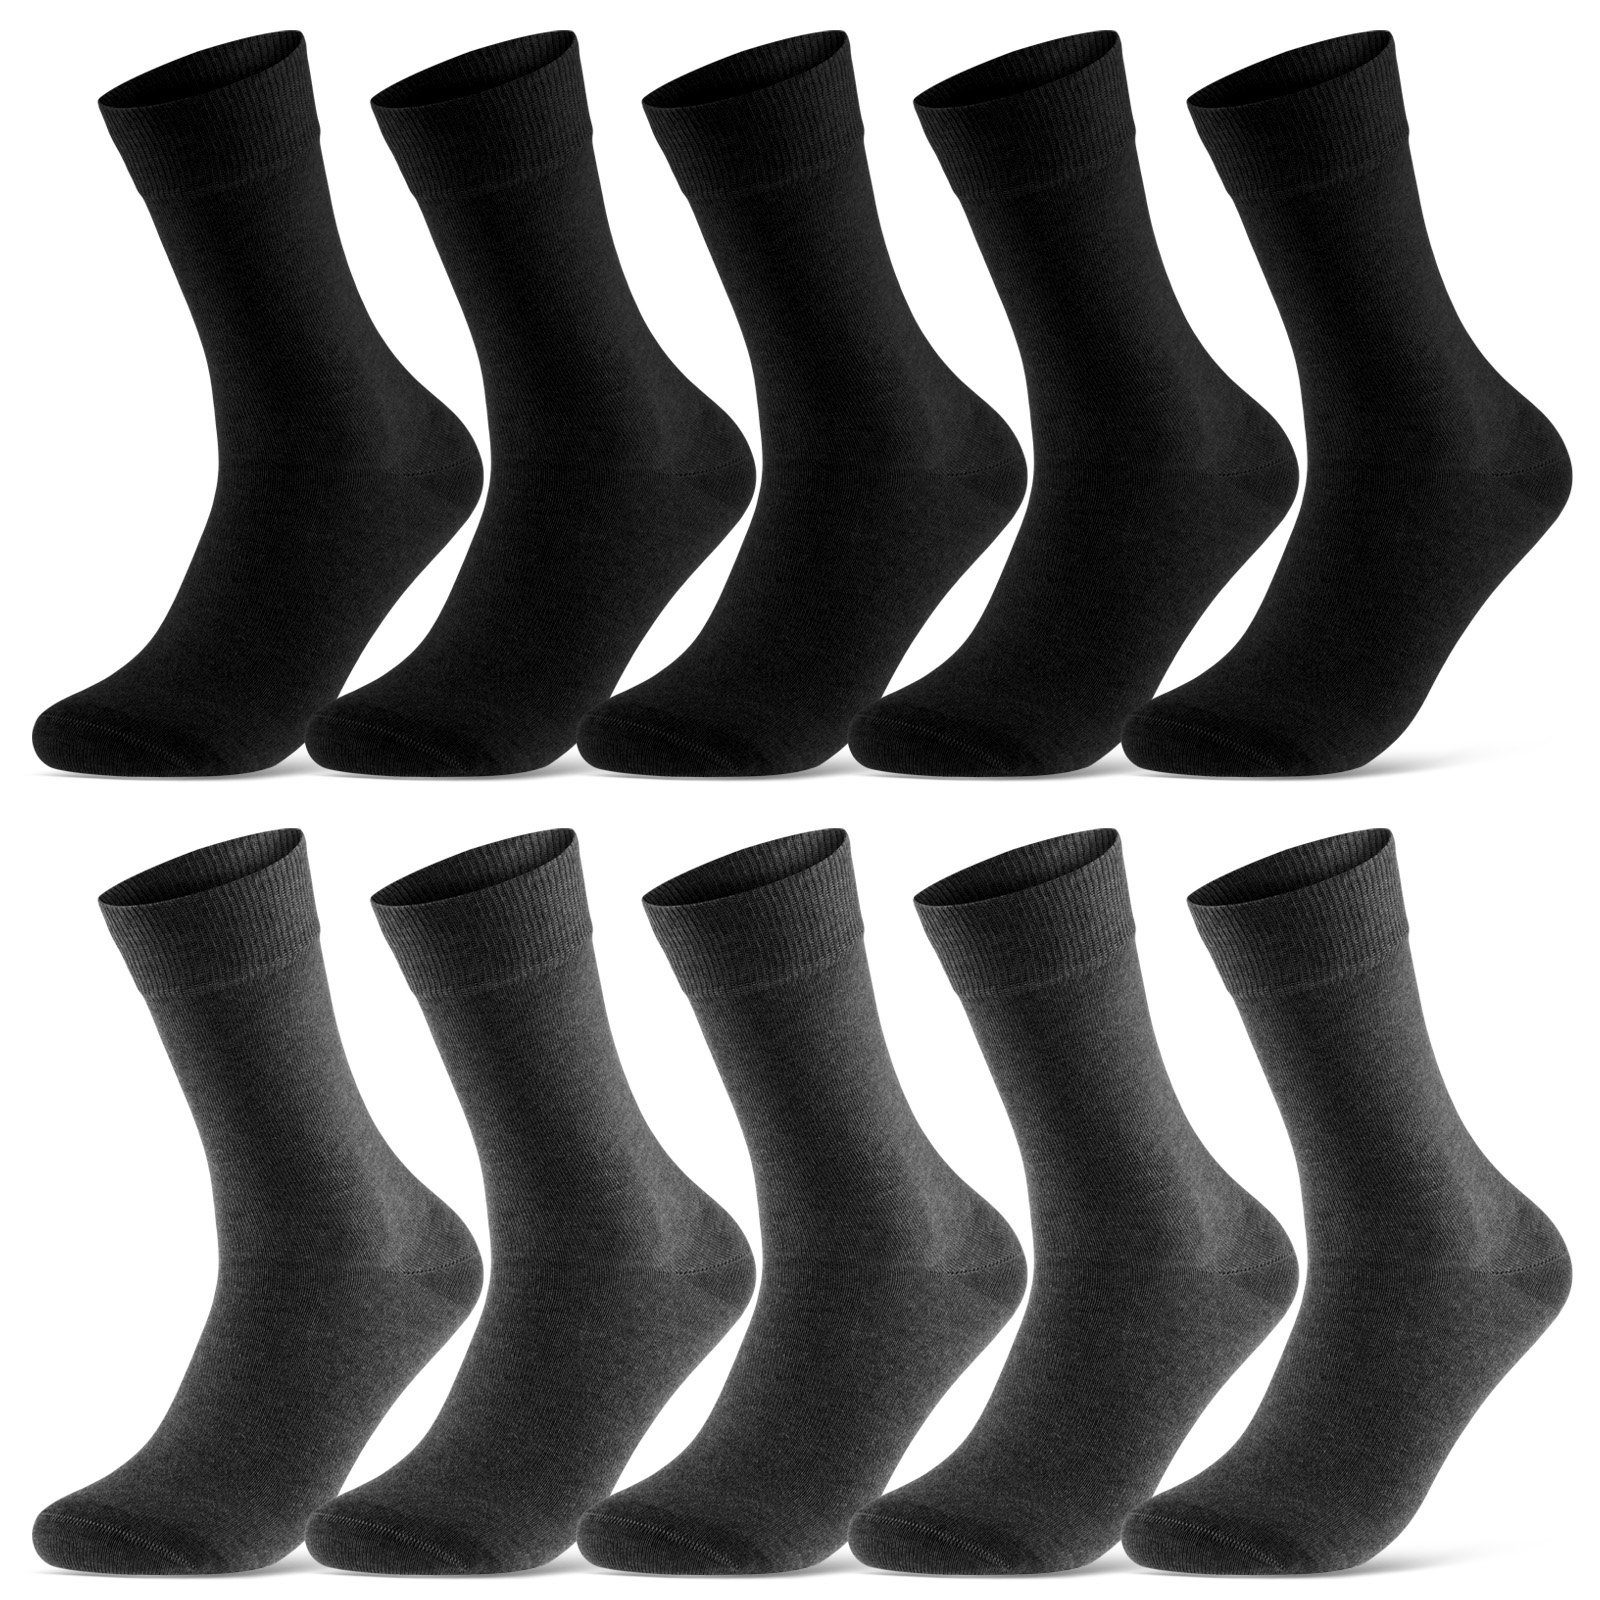 sockenkauf24 Socken 10 Paar Damen & Herren Socken Business Socken Baumwolle (Schwarz/Anthra, 39-42) mit Komfortbund (Basicline) - 70201T WP